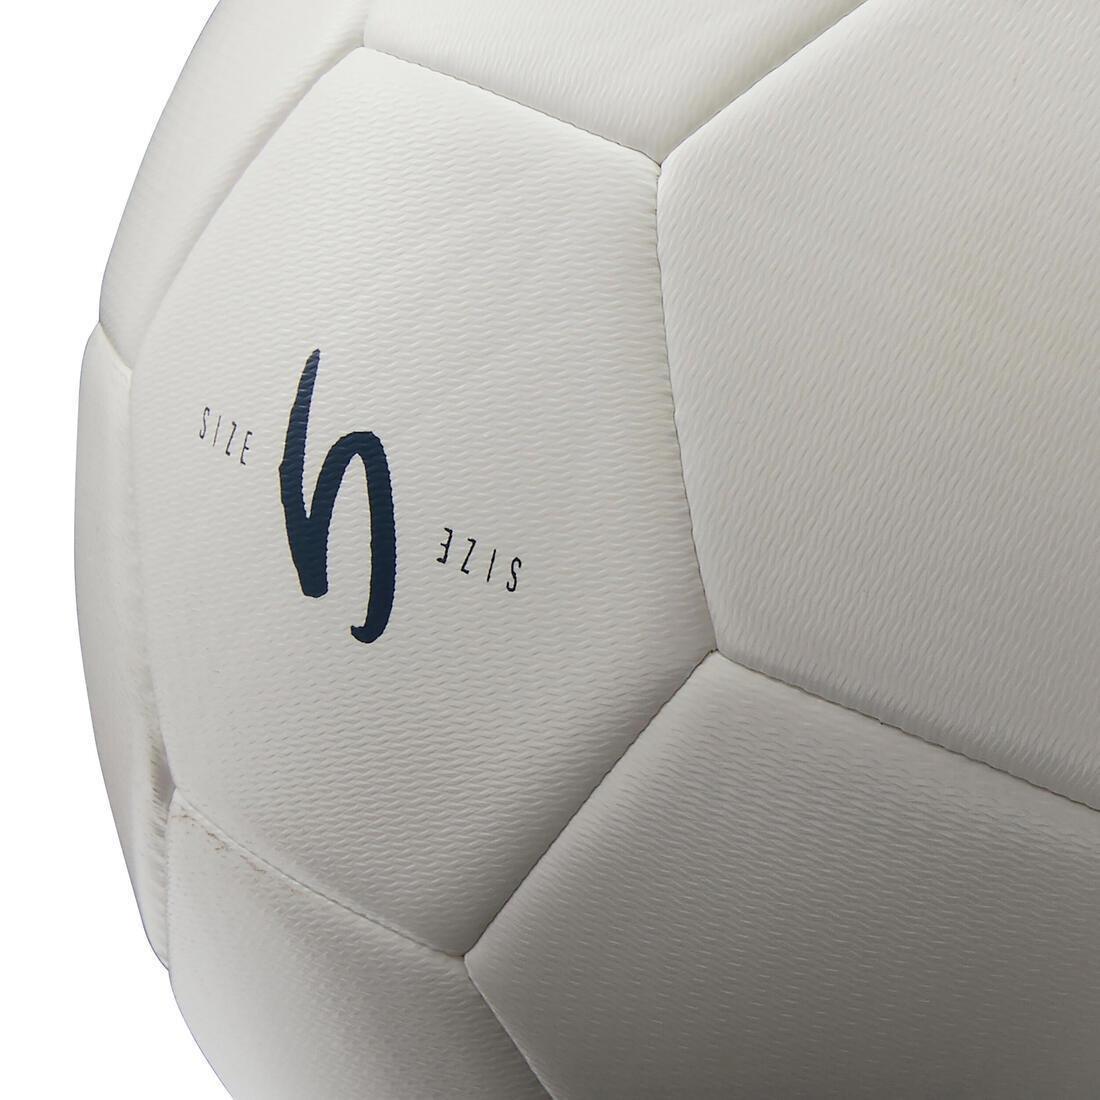 KIPSTA - Machine-Stitched Football - F100 Size 5, White